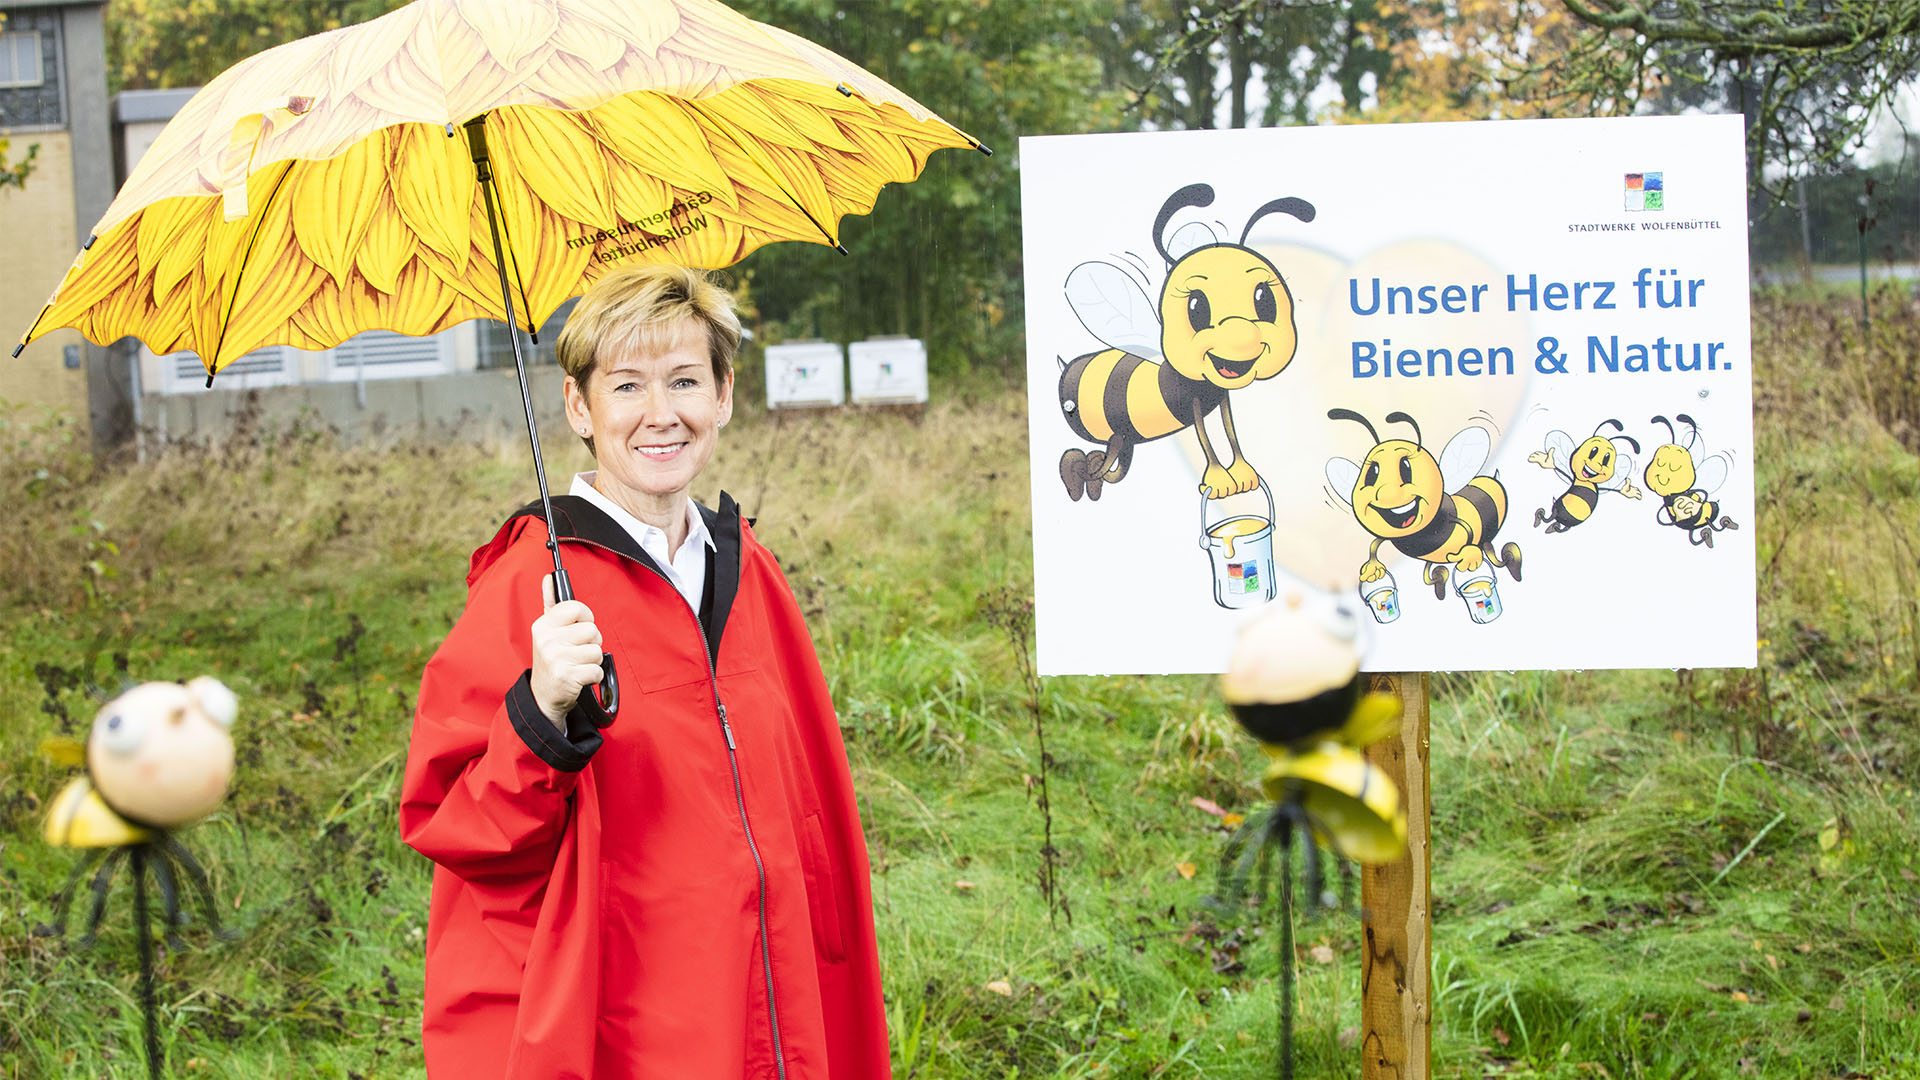 Eine Frau mit Regenschirm steht vor einer Wiese und einem Schild "Unser Herz für Bienen & Natur".